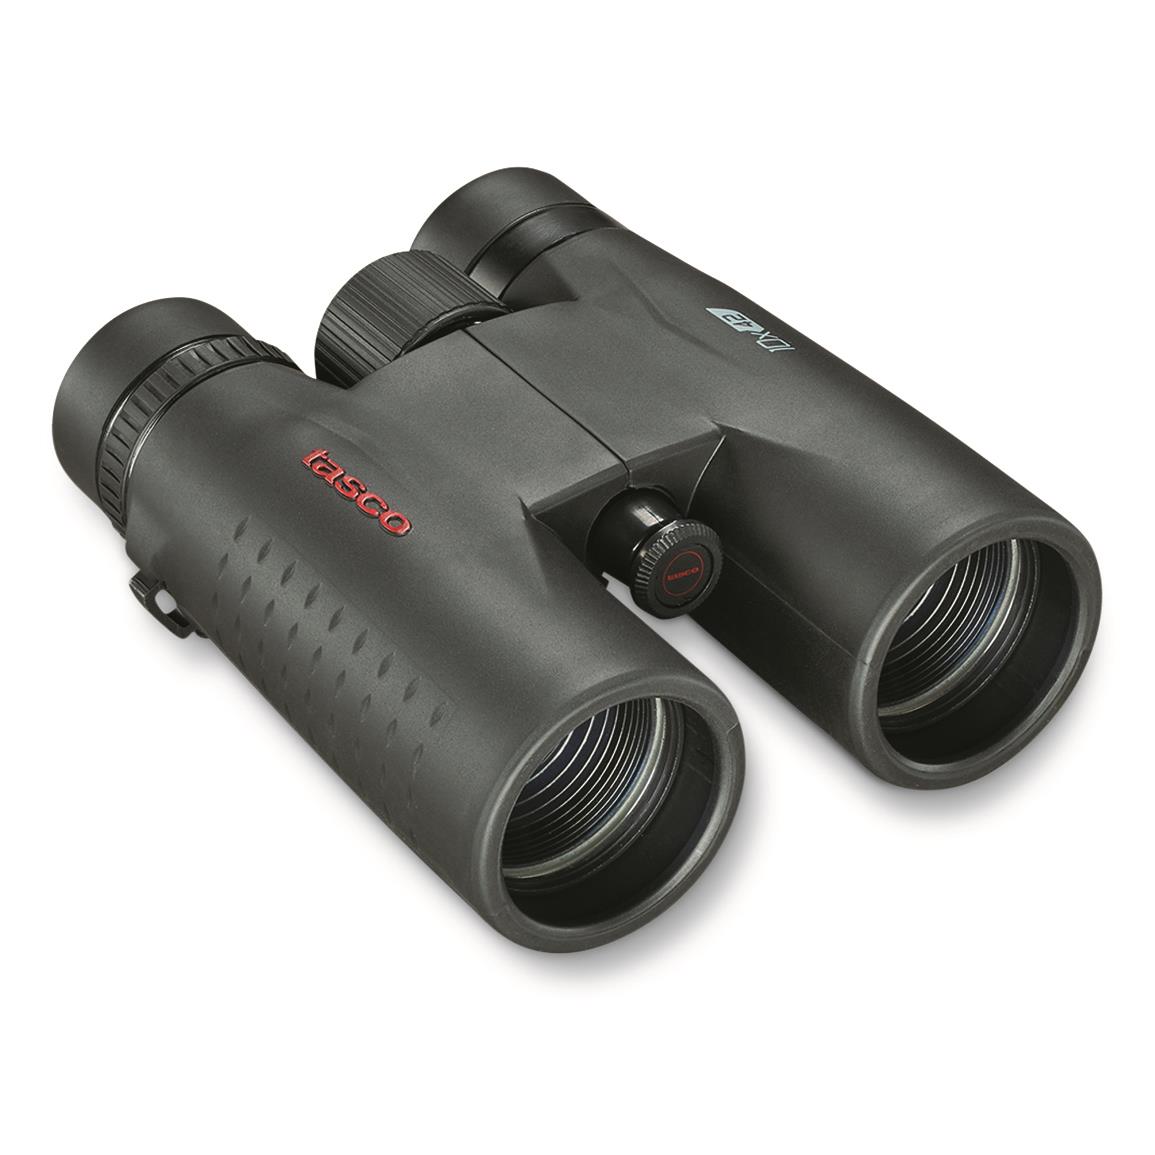 Tasco Essentials 10x42mm Binoculars